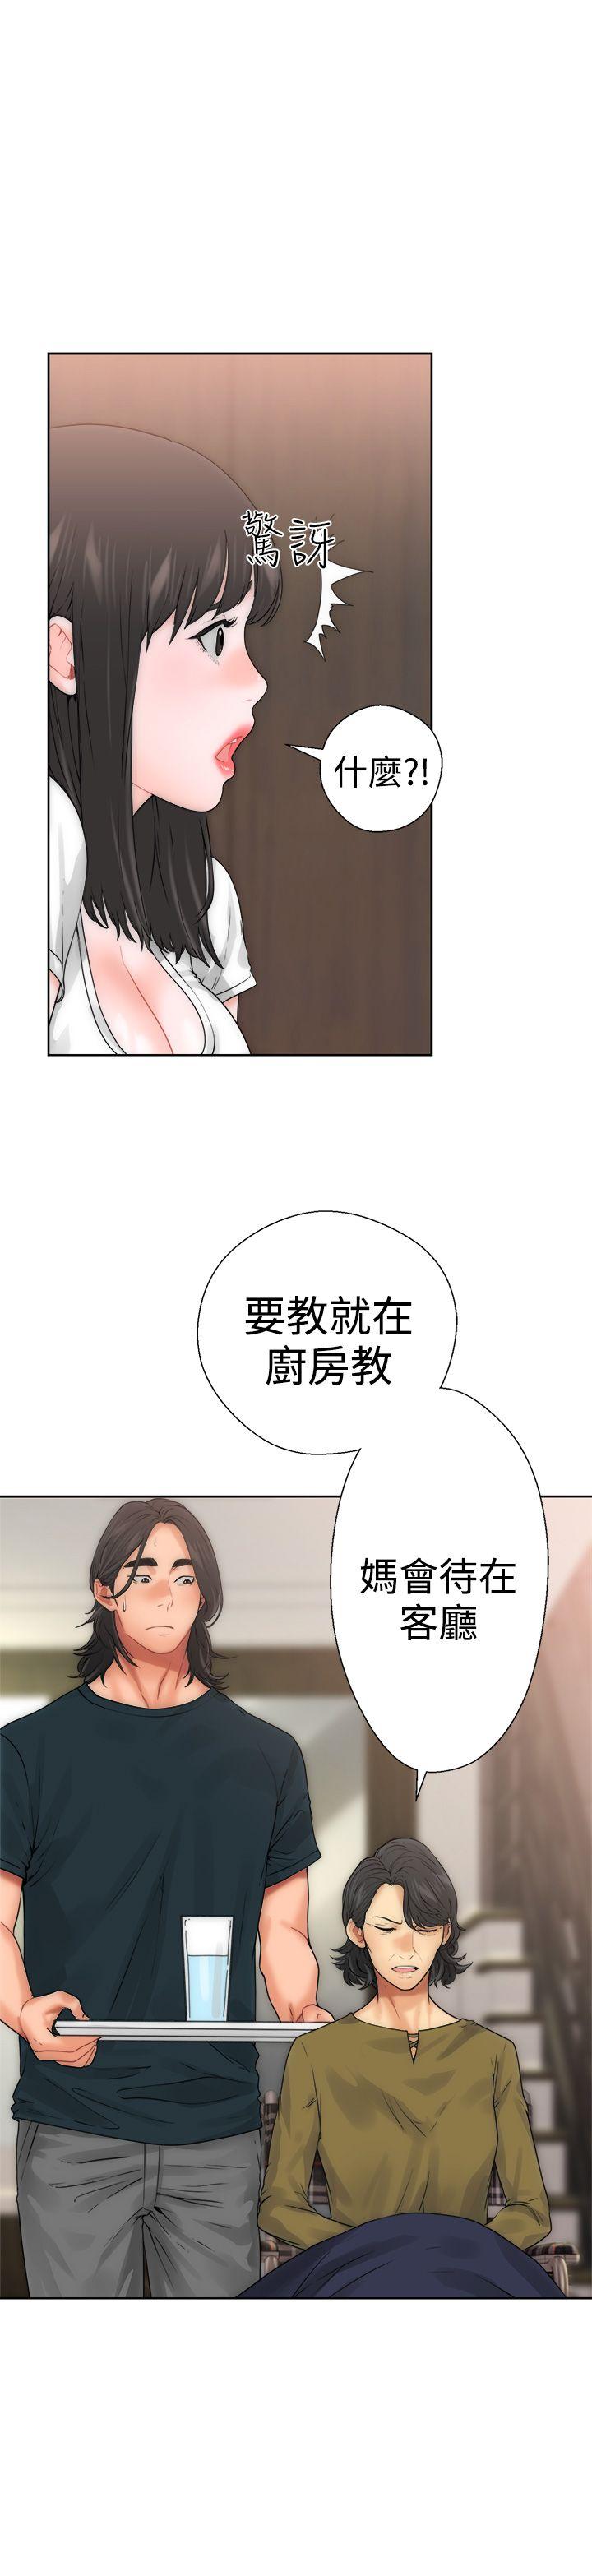 韩国污漫画 解禁:初始的快感 第10话 3